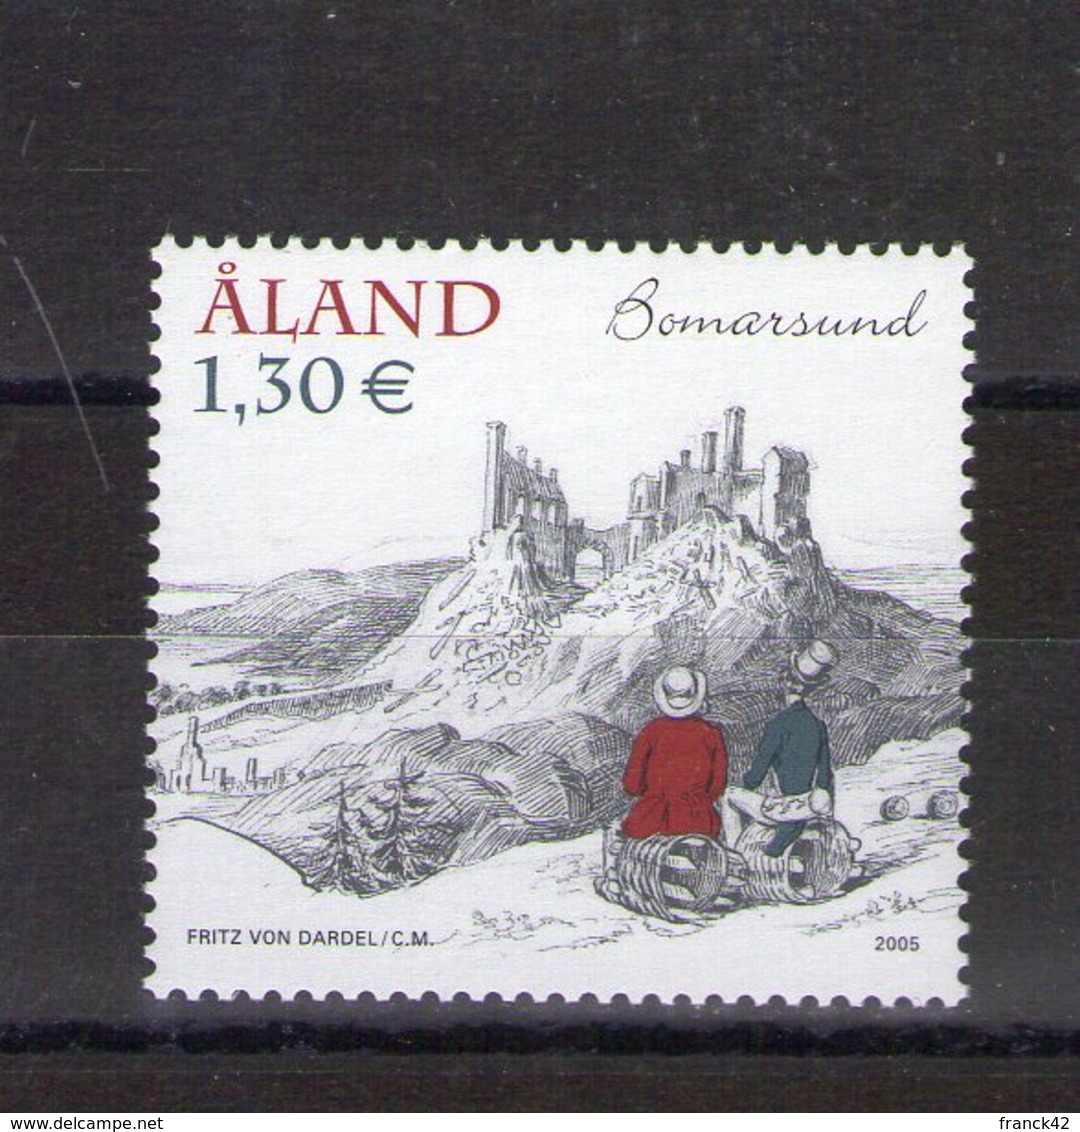 Aland. Voyage D'agrément à Bomarsund - Aland